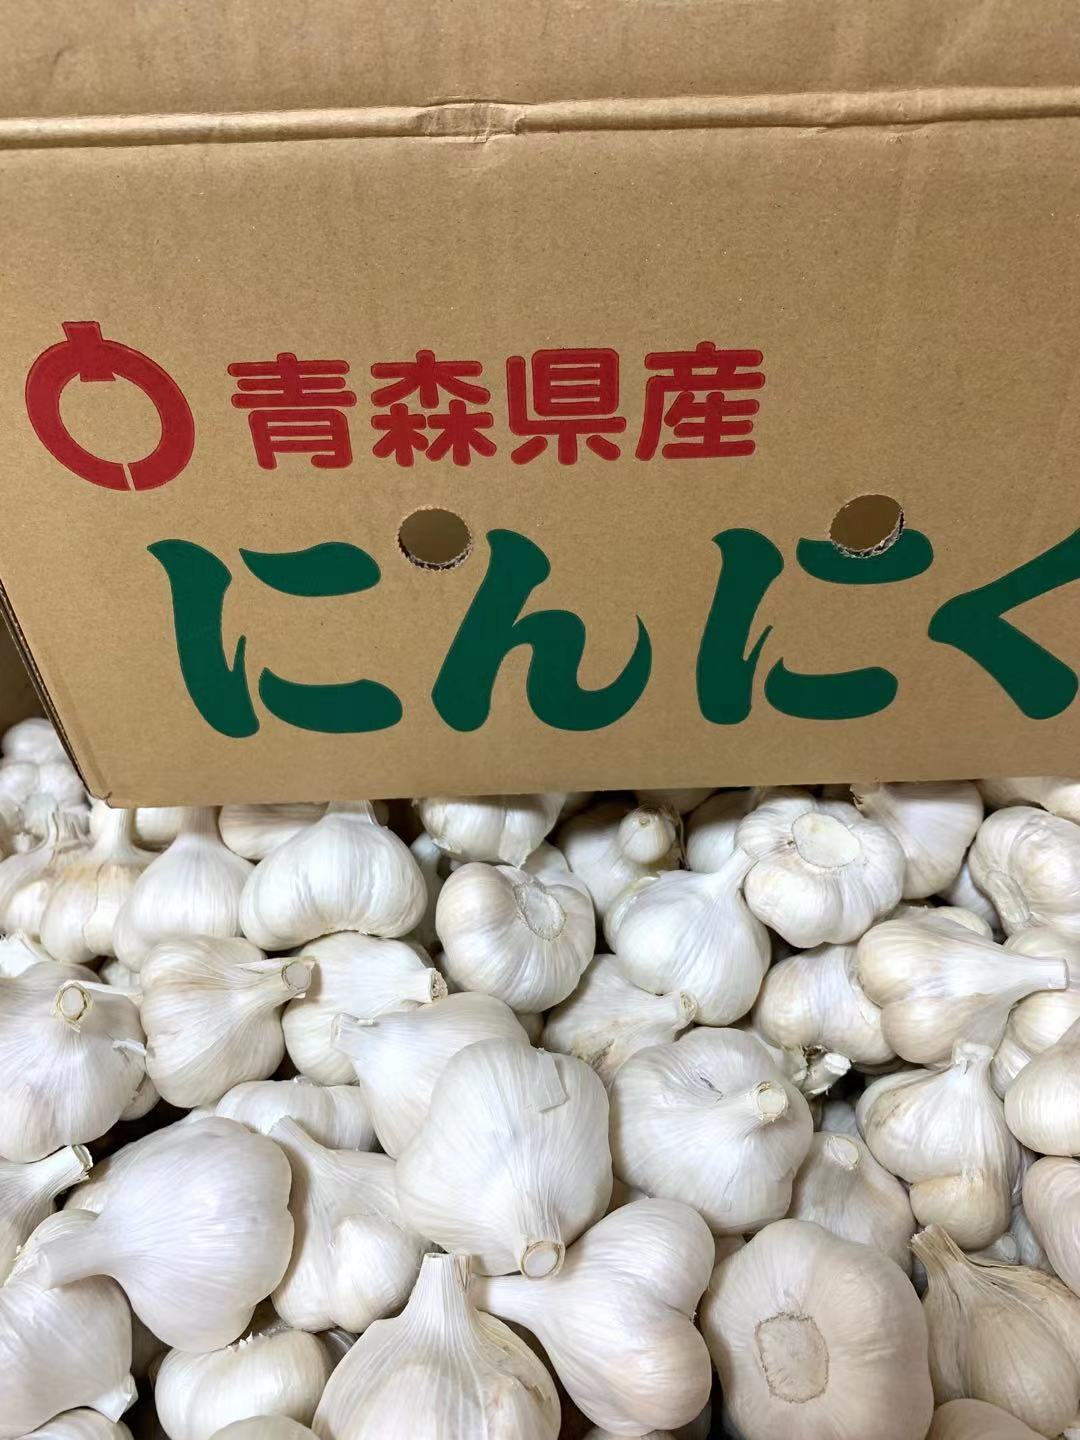 適当な価格 にんにく 青森県産 ホワイト六片種にんにく 訳ありにんにくMサイズ10kg fucoa.cl